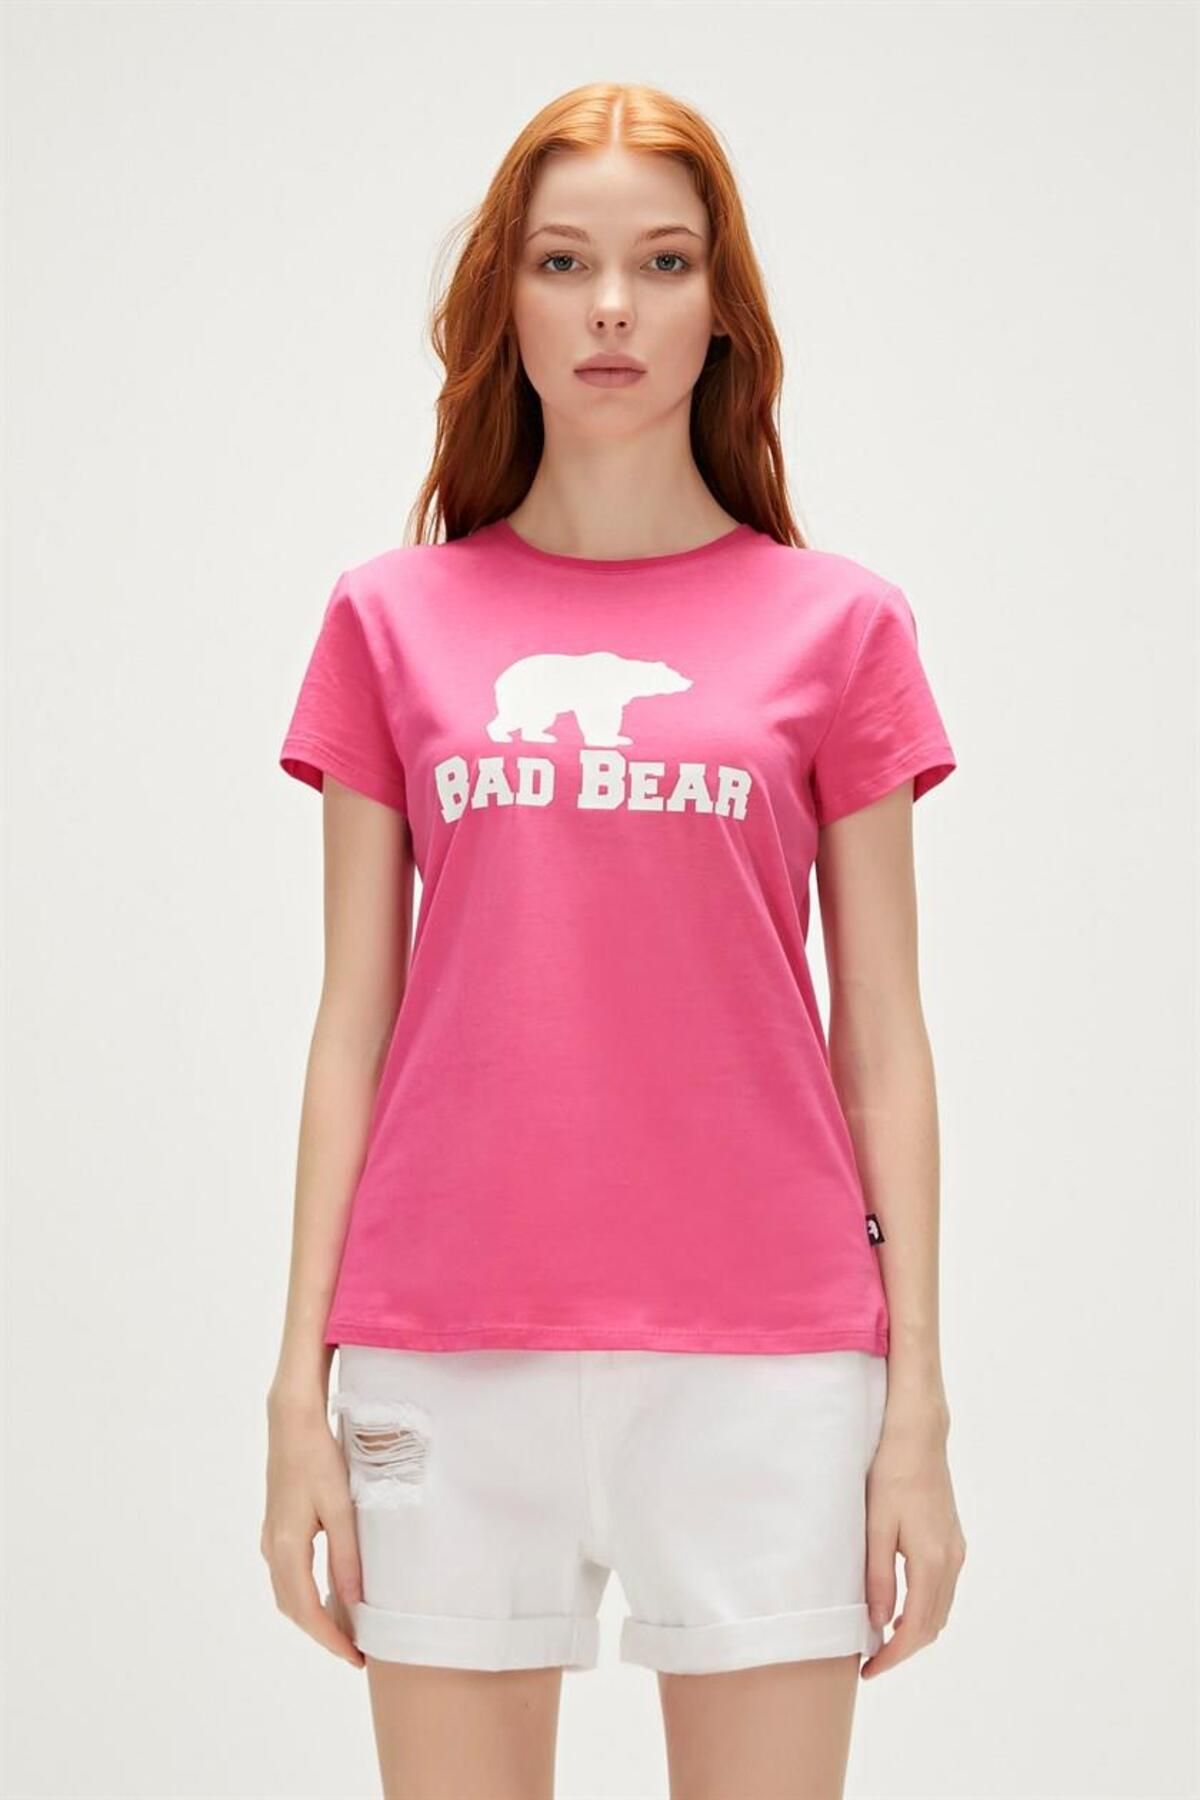 Bad Bear Logo Kadın Tişört 21.03.07.010-c124